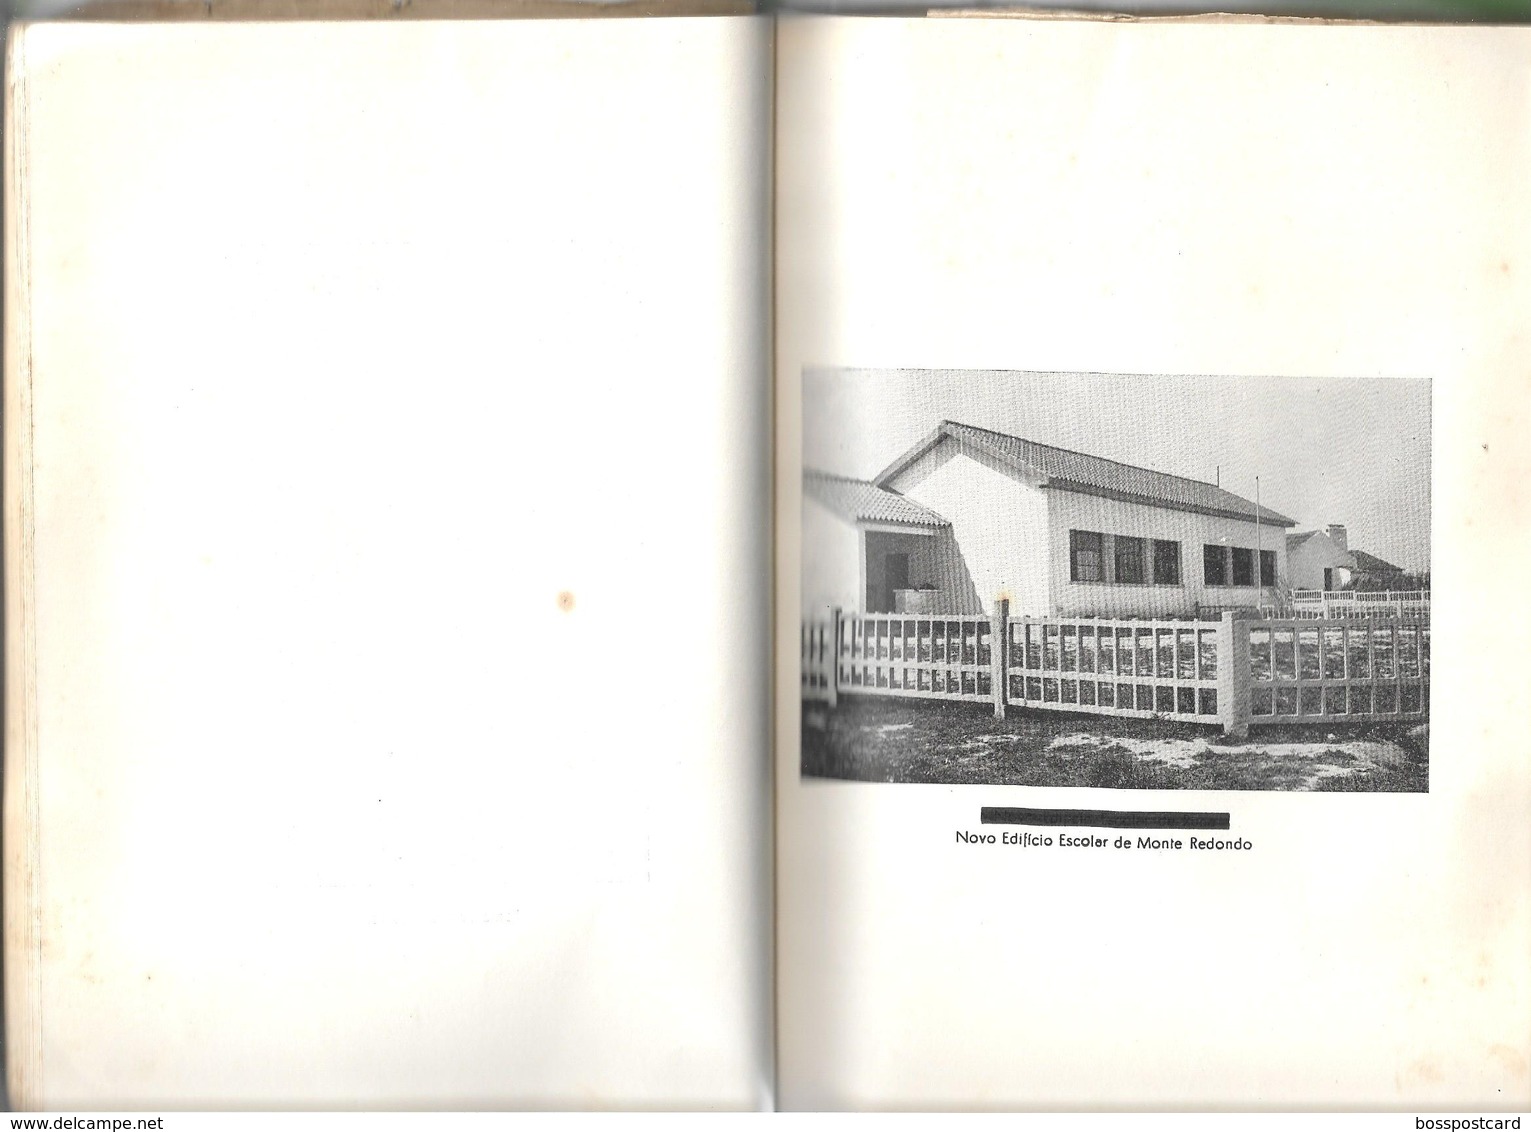 Torres Vedras - Relatório da Gerência desta Câmara no ano de 1957